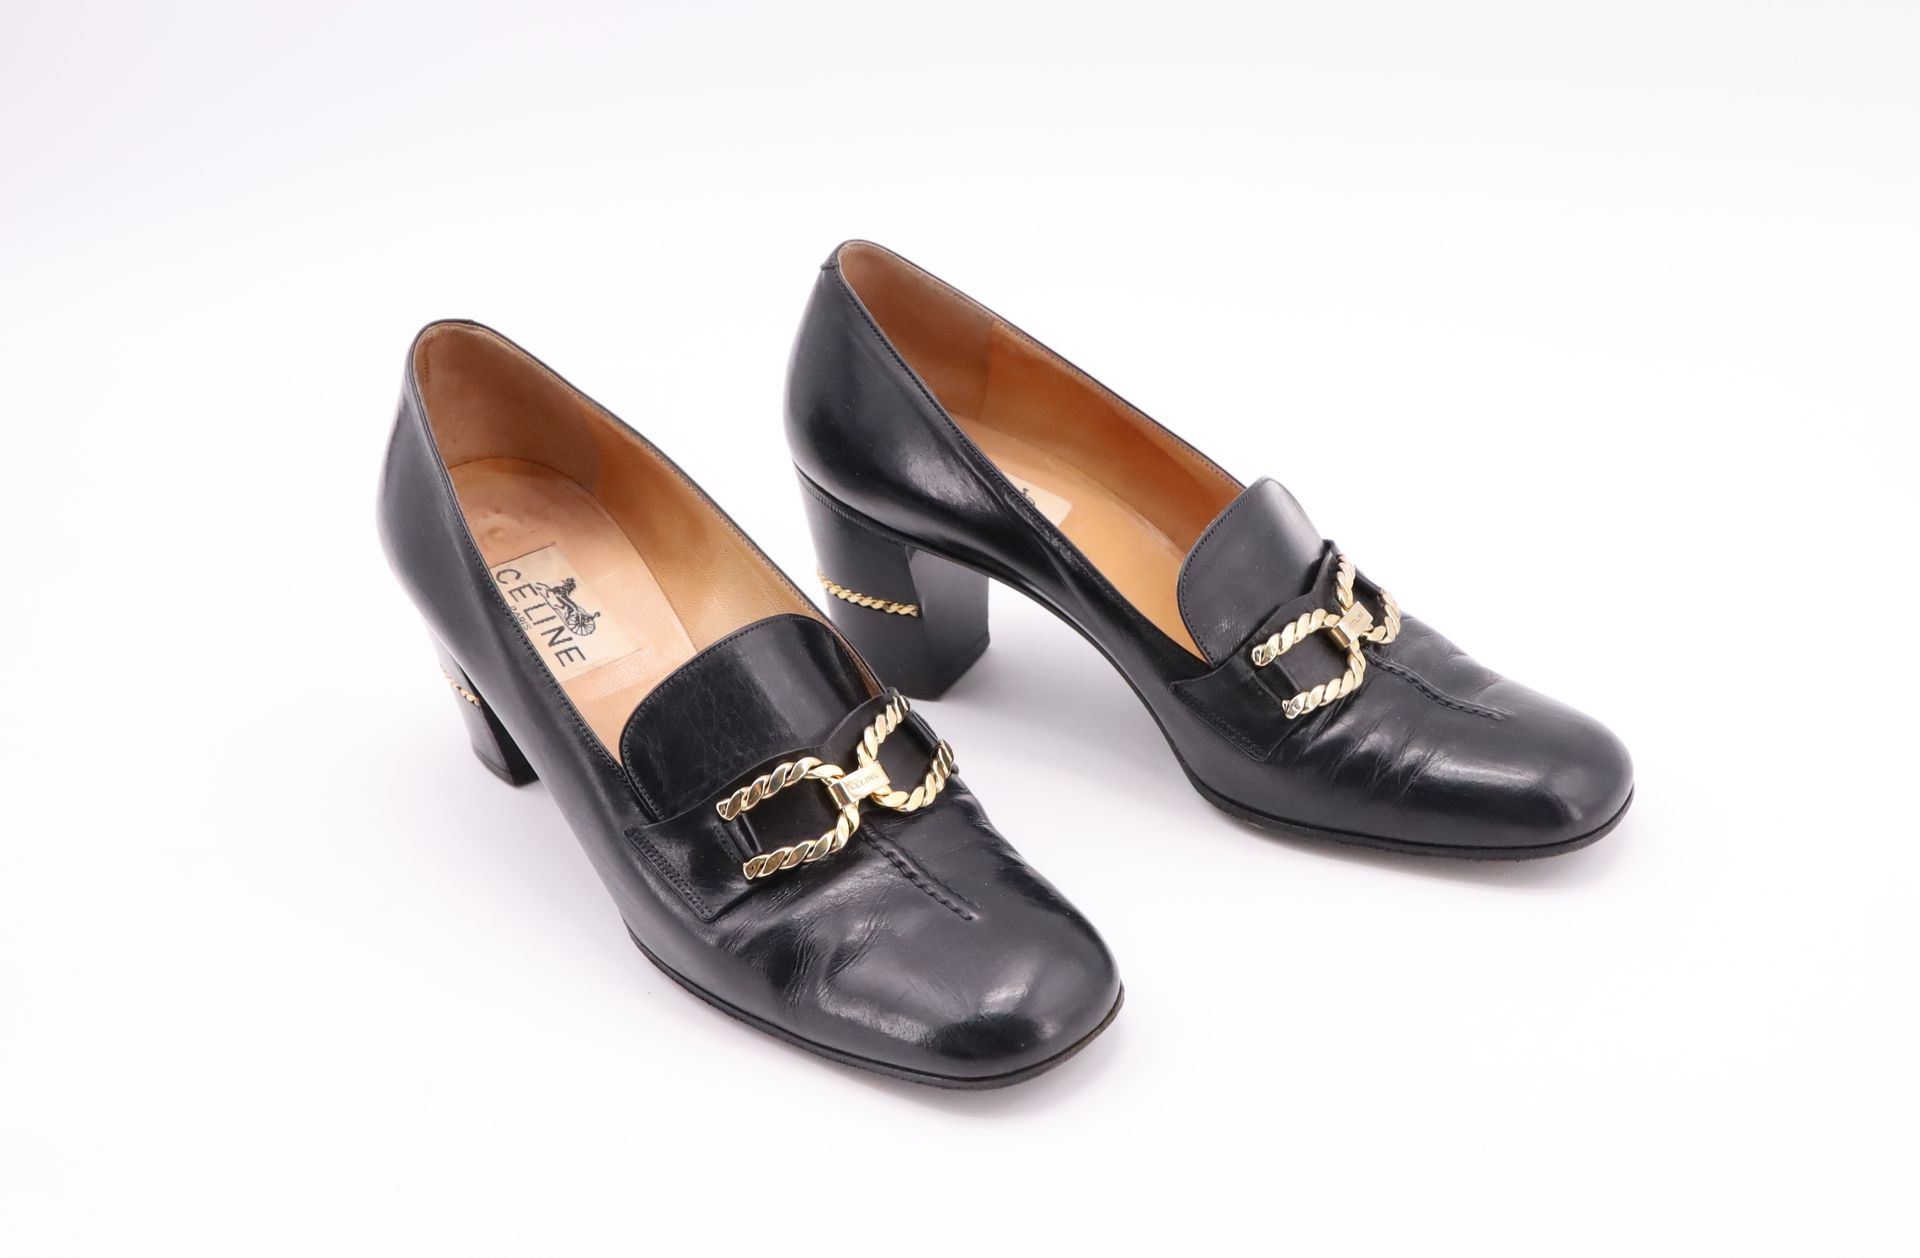 Null CELINE - PARIS，一双黑色真皮高跟鞋，金链缠绕 - 尺寸38 - 宽27厘米 - 高6.5厘米（鞋跟）（走路有褶皱）。